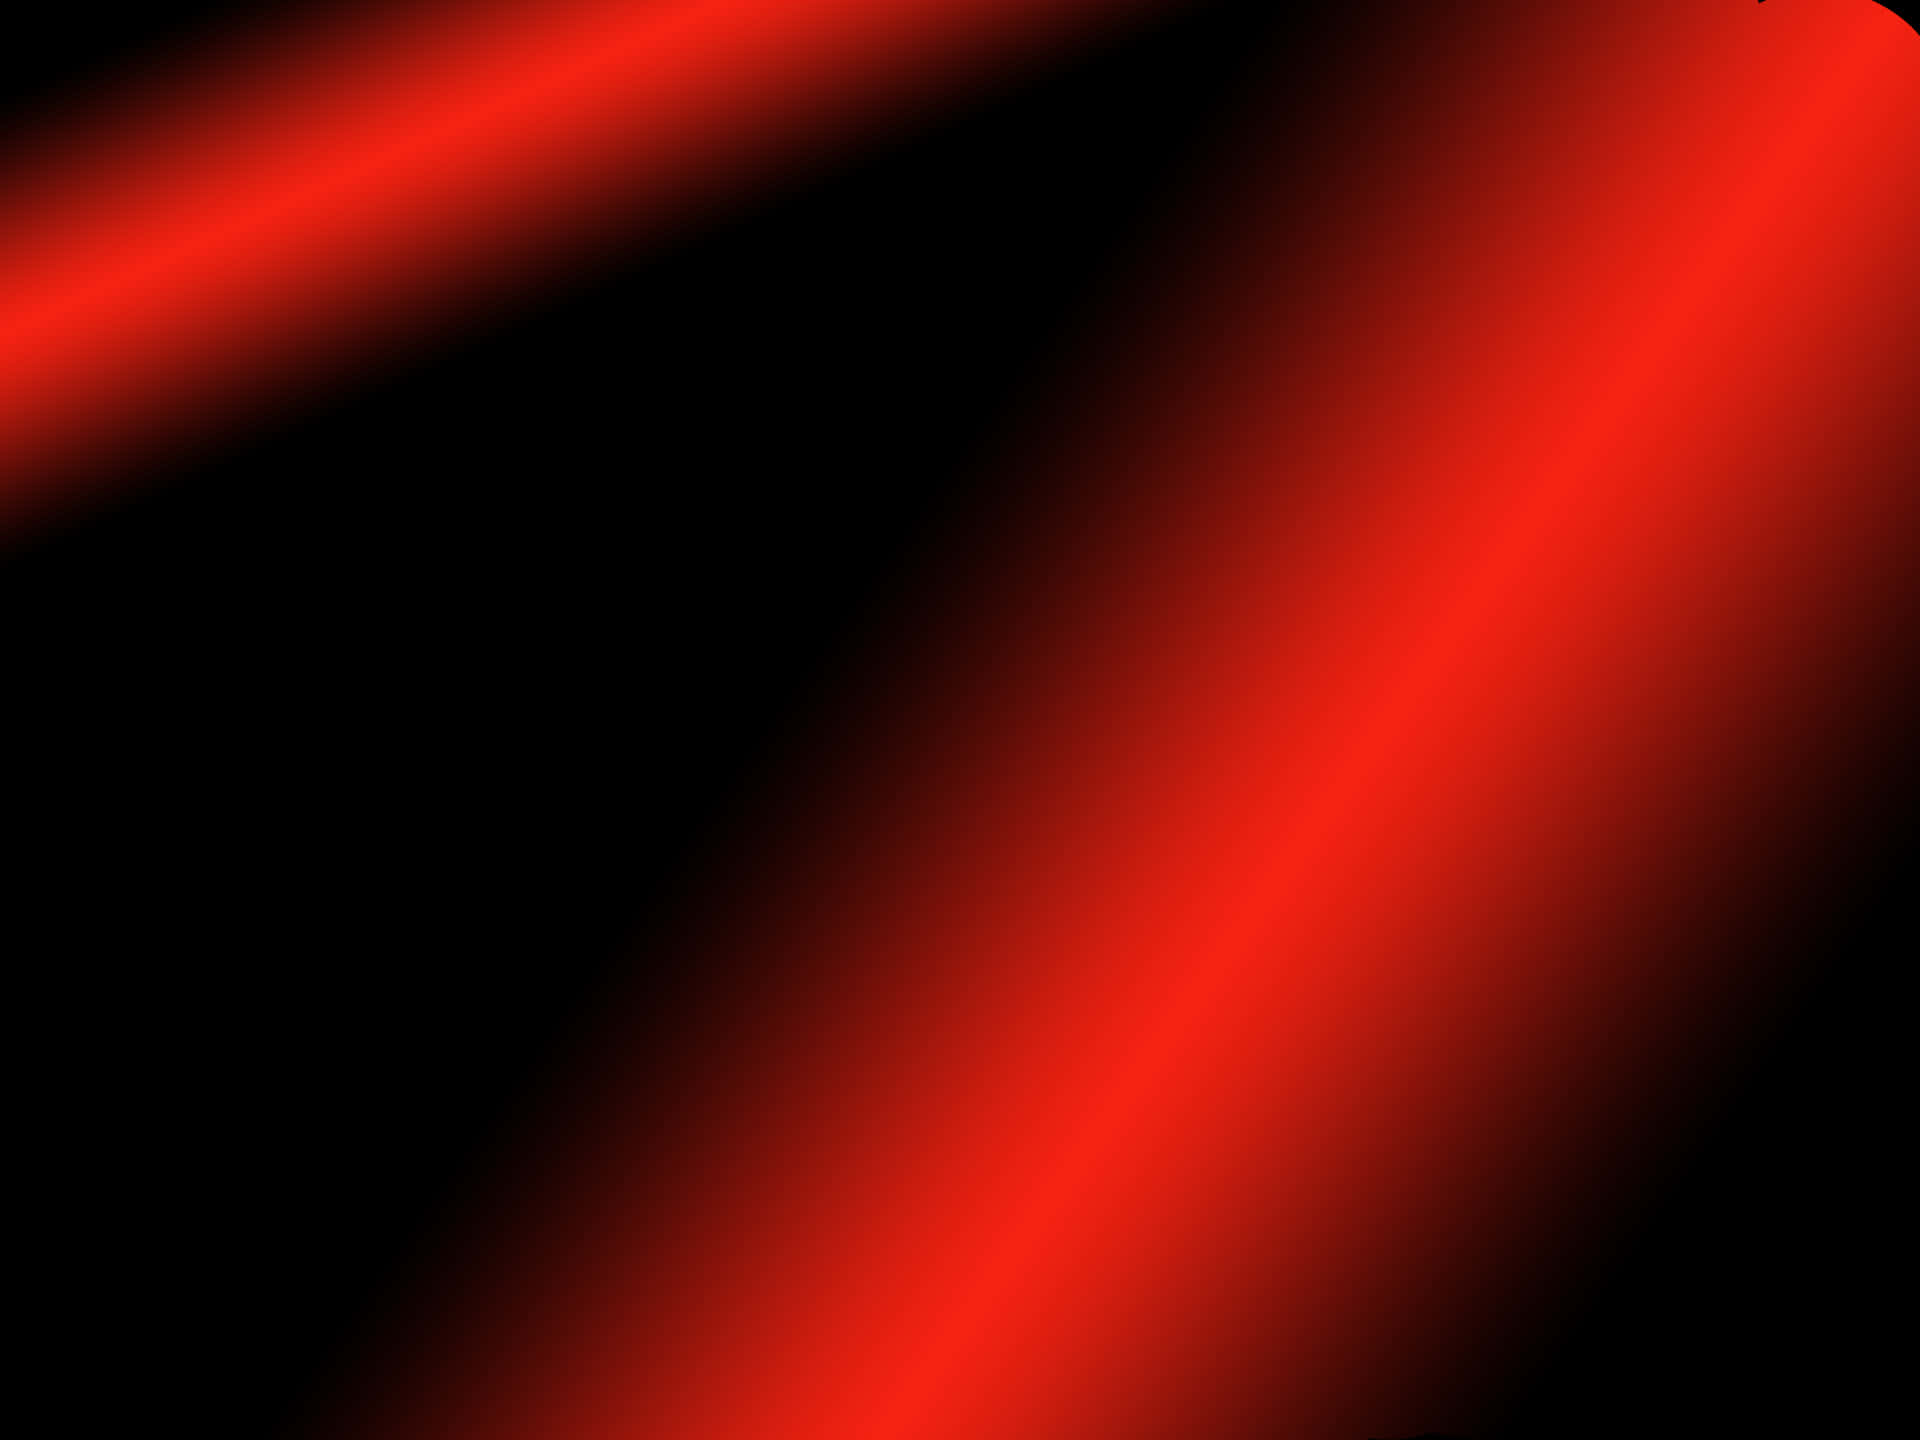 Immagineuno Sfondo Rosso Brillante Al Neon Con Texture.